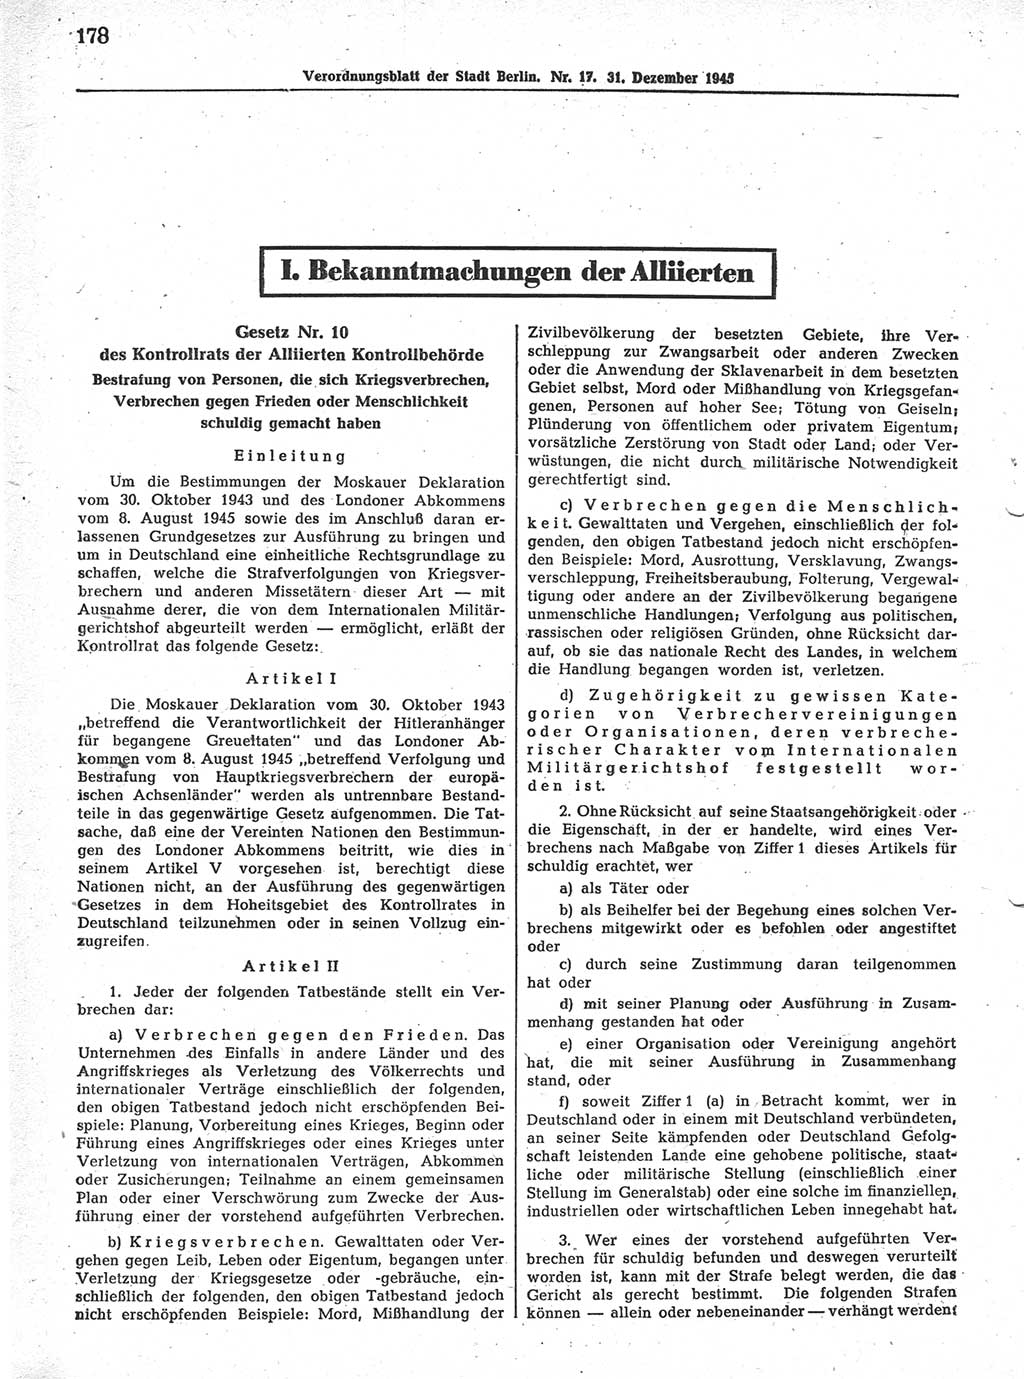 Verordnungsblatt (VOBl.) der Stadt Berlin 1945, Seite 178 (VOBl. Bln. 1945, S. 178)